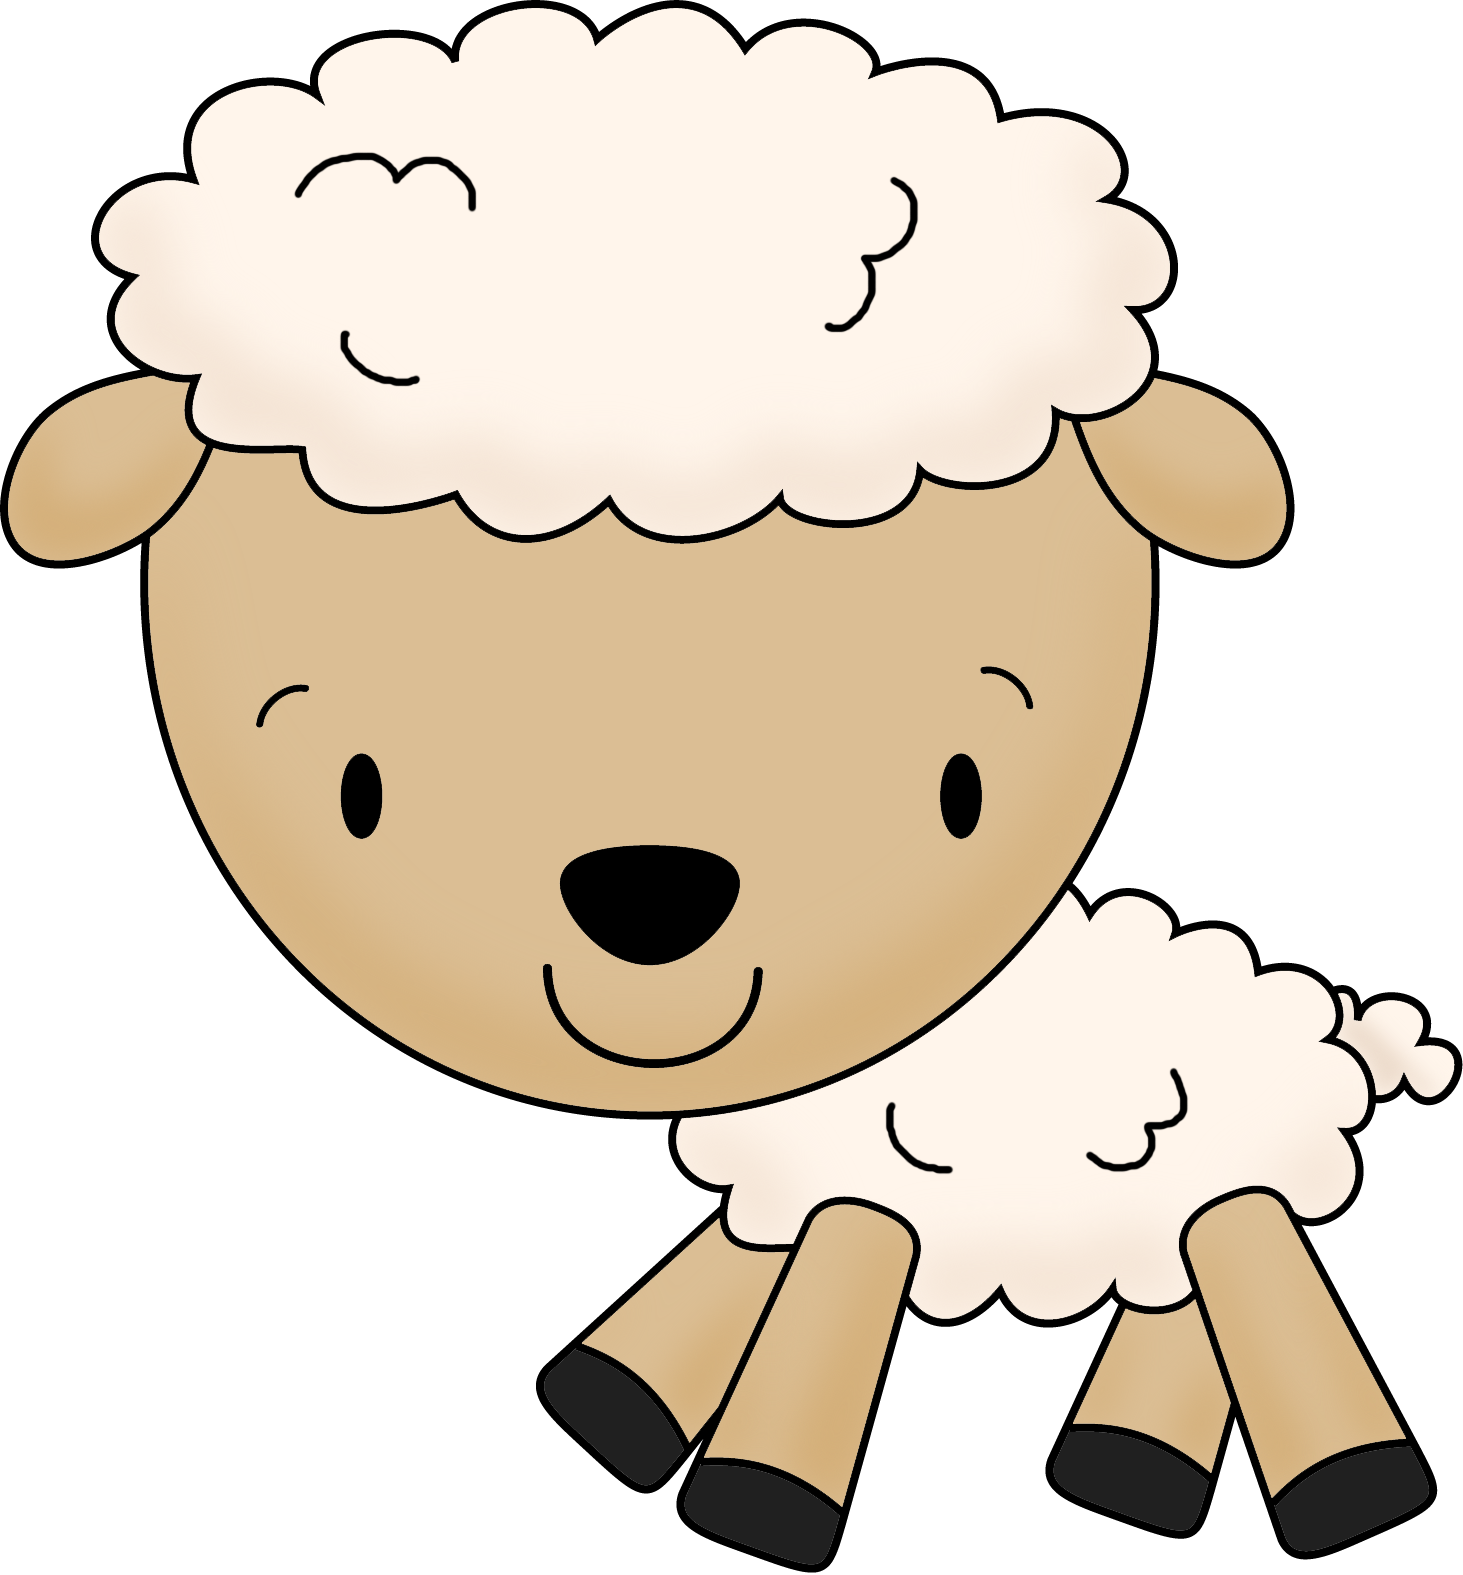 Lamb - Lamb Cartoon Transparent (1463x1575)